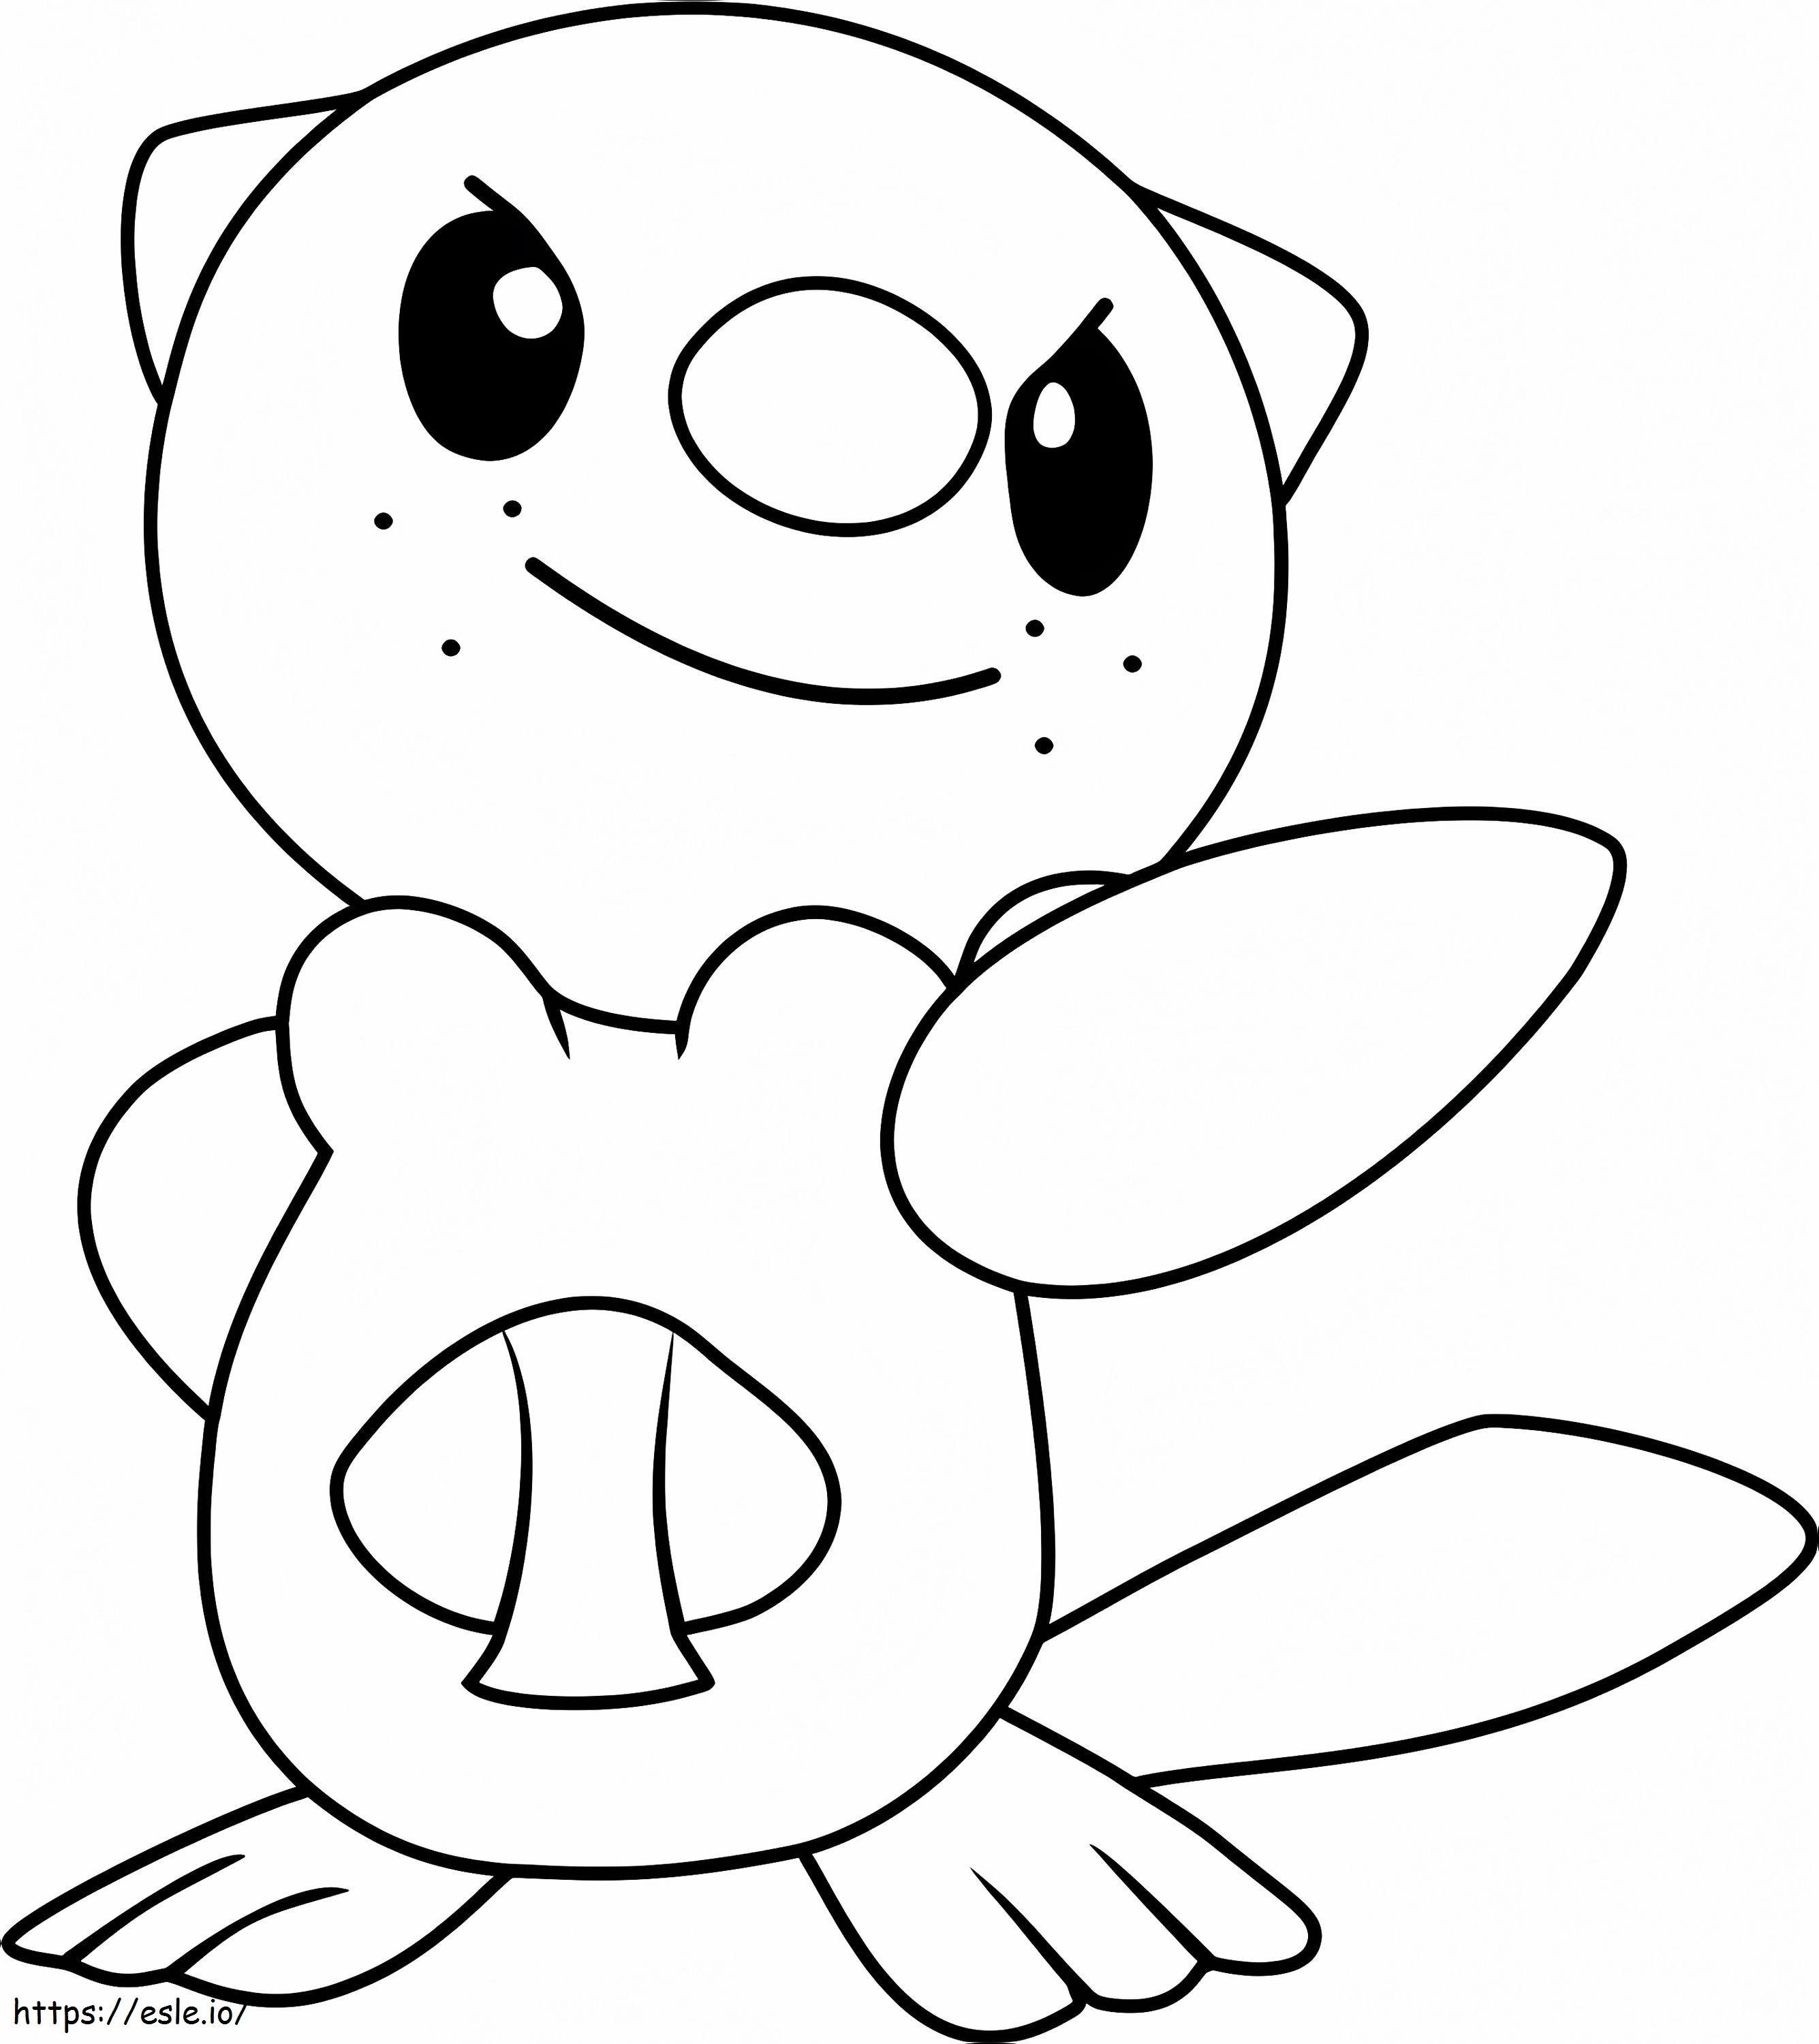 Szczęśliwy Pokemon Oshawott kolorowanka